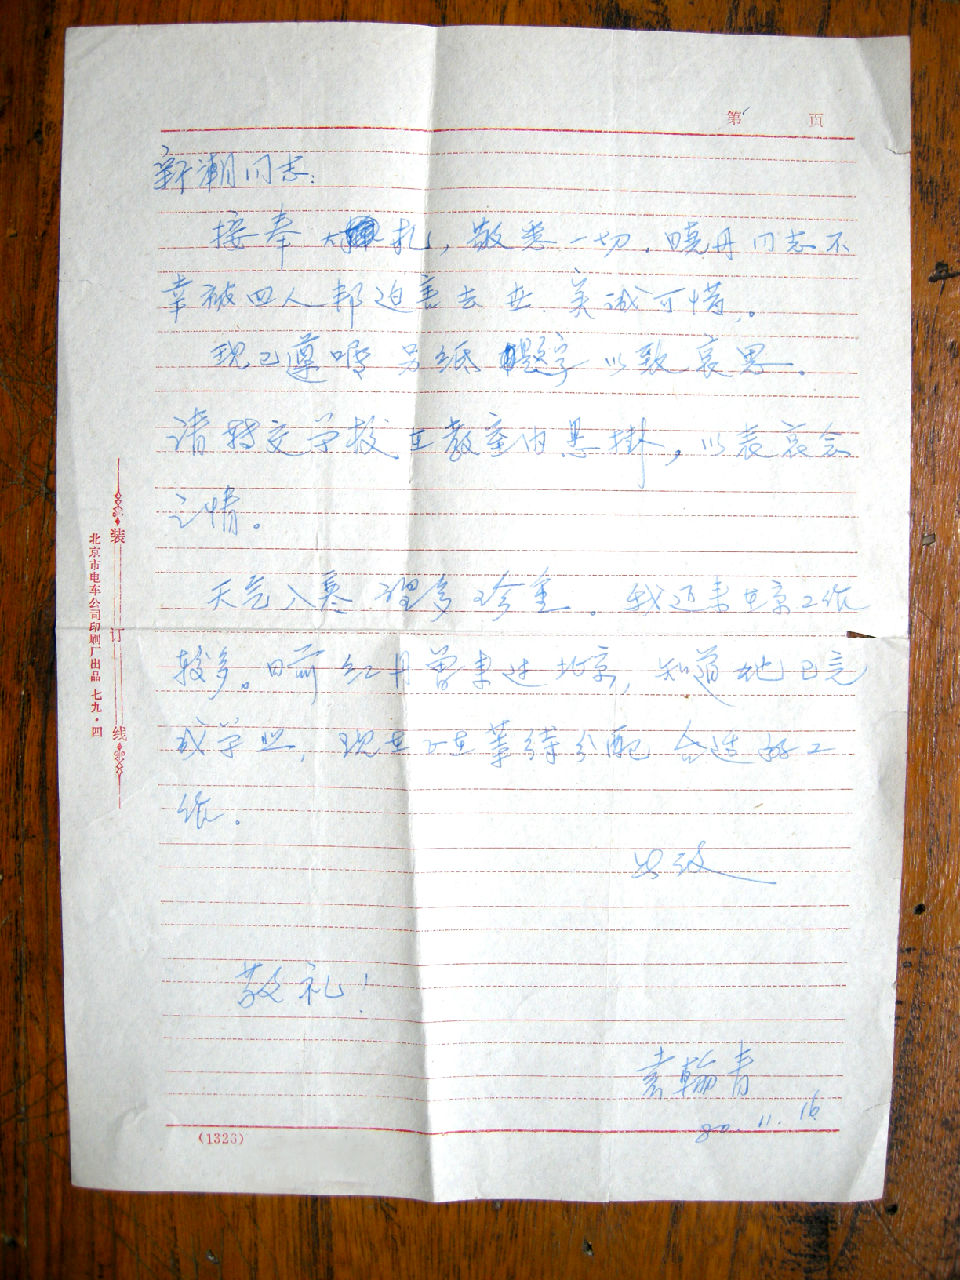 袁翰青寫給鄭曉丹父親的慰問信